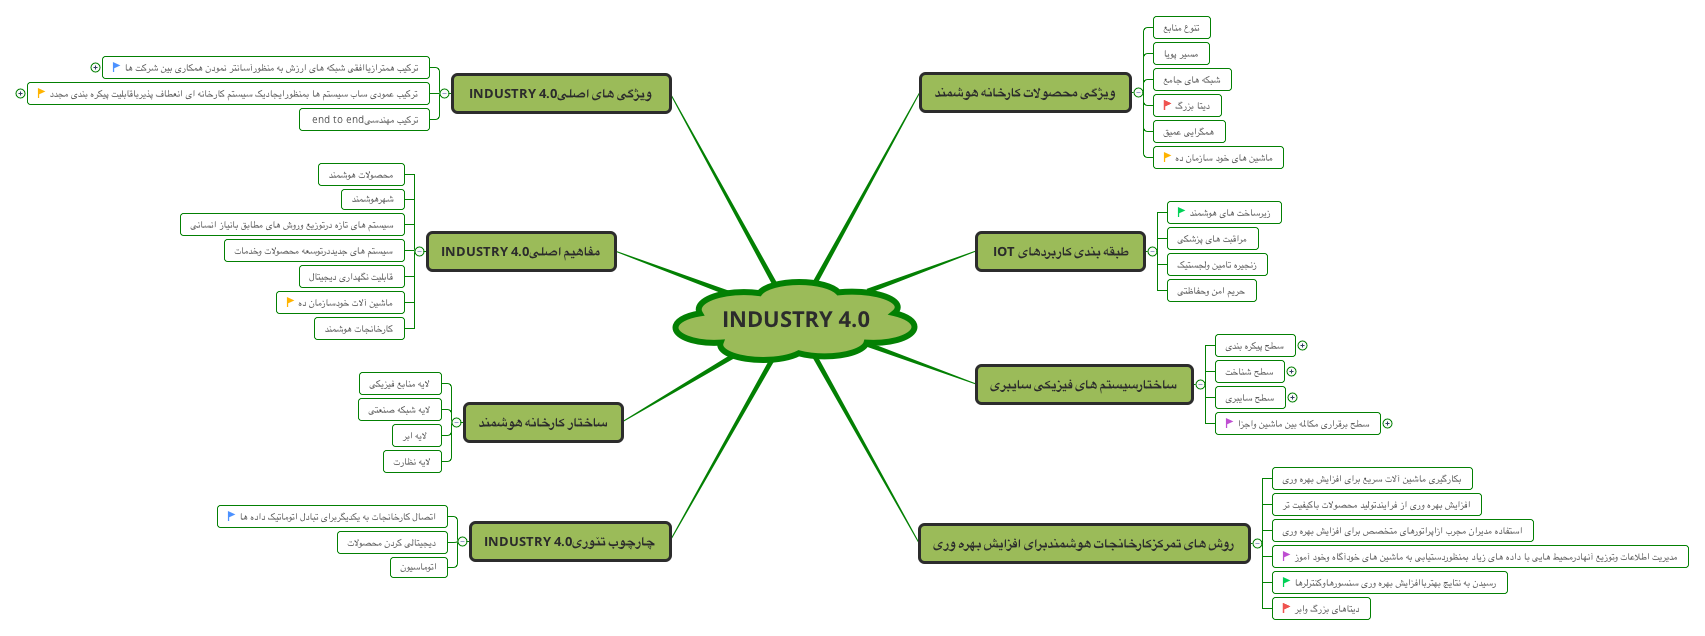 پرونده:New industry 4.0.png